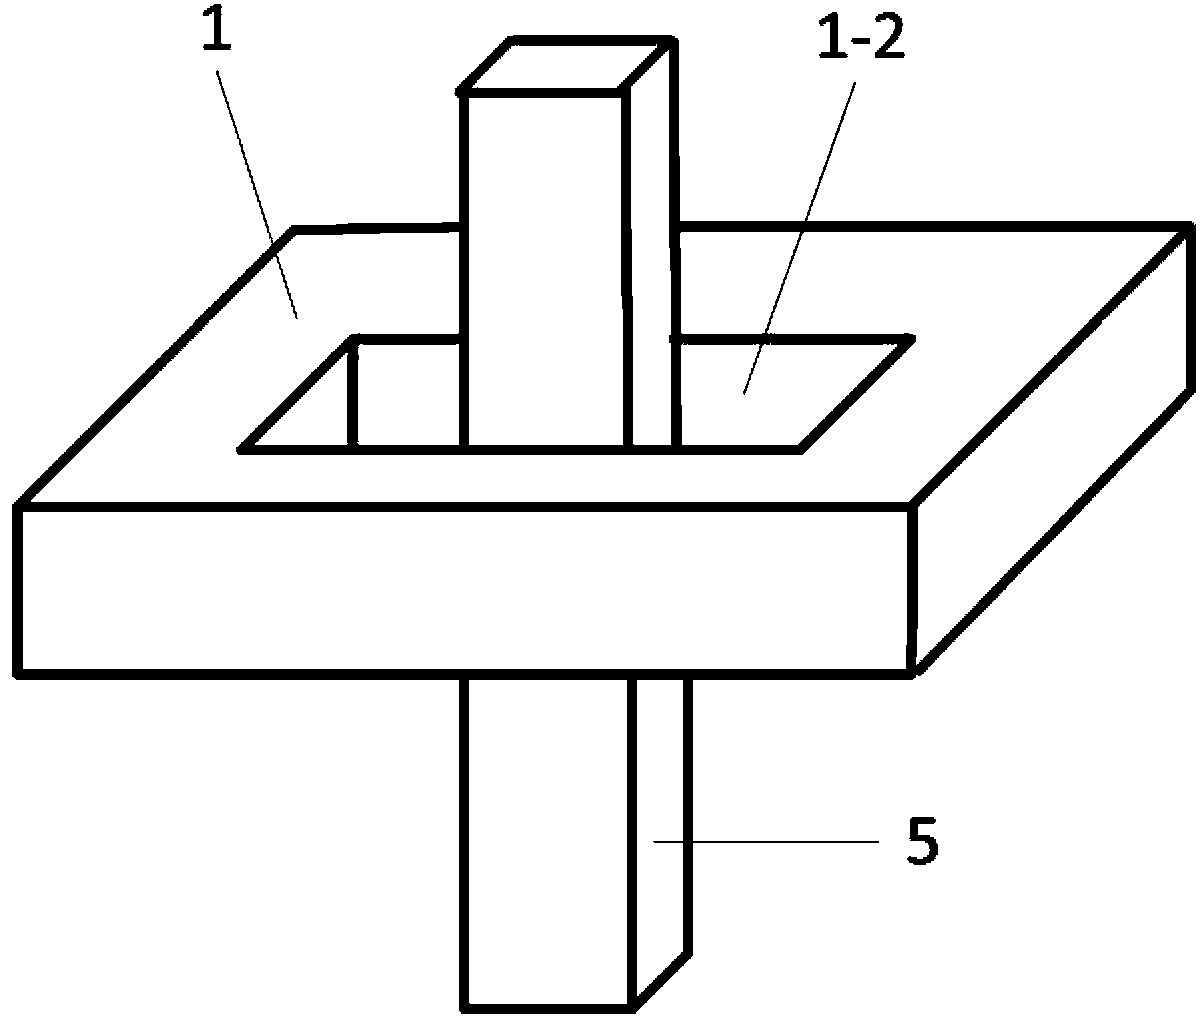 Dual-Hall element current sensor